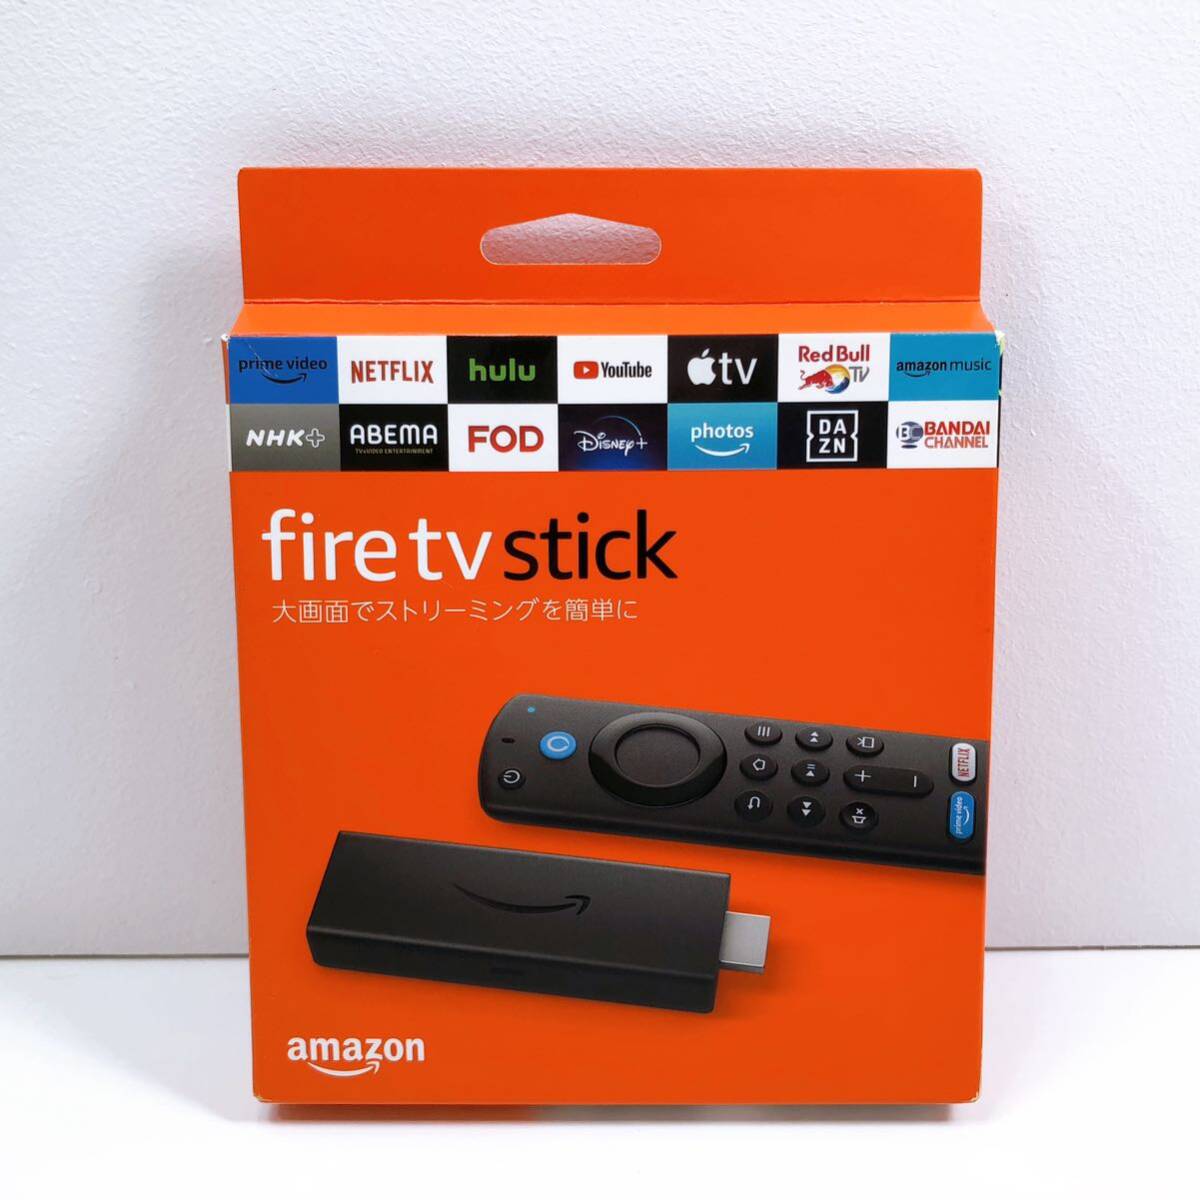 148【未使用】fire tv stick Amazon ファイヤースティック アマゾン Alexa対応音声認識リモコン 第3世代 新品 未開封 自宅保管品の画像1